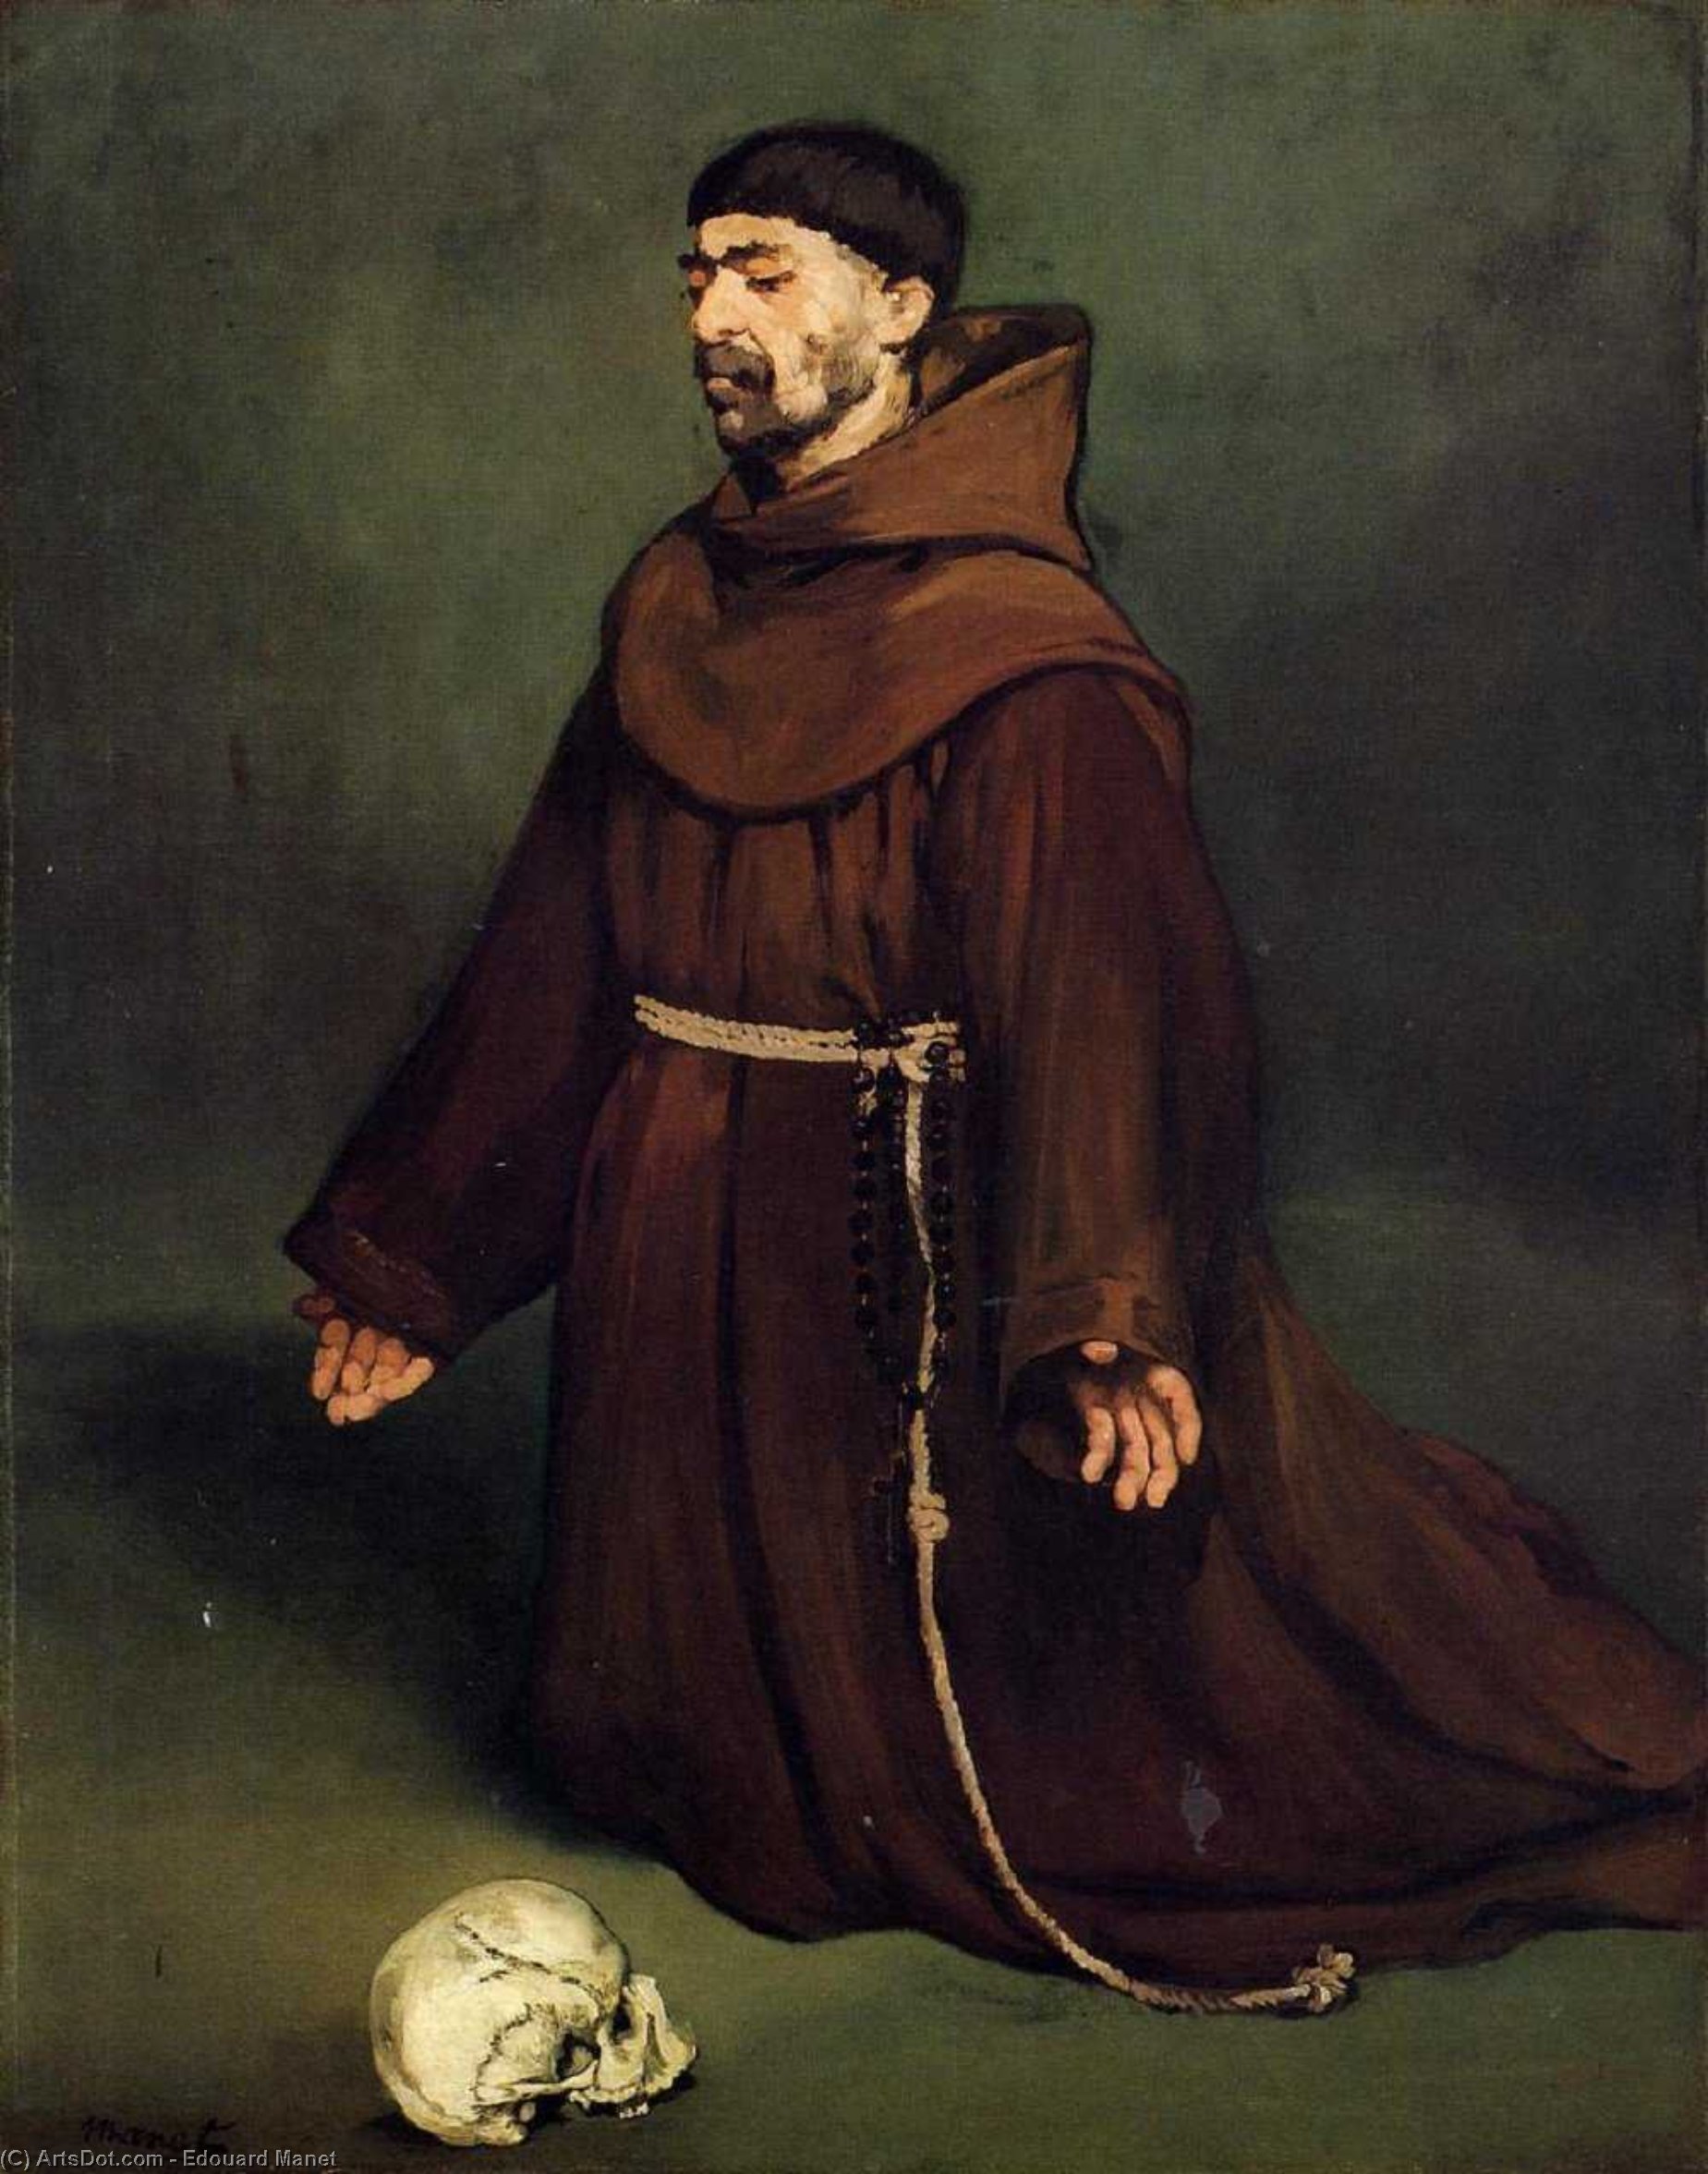 WikiOO.org - אנציקלופדיה לאמנויות יפות - ציור, יצירות אמנות Edouard Manet - Monk at Prayer